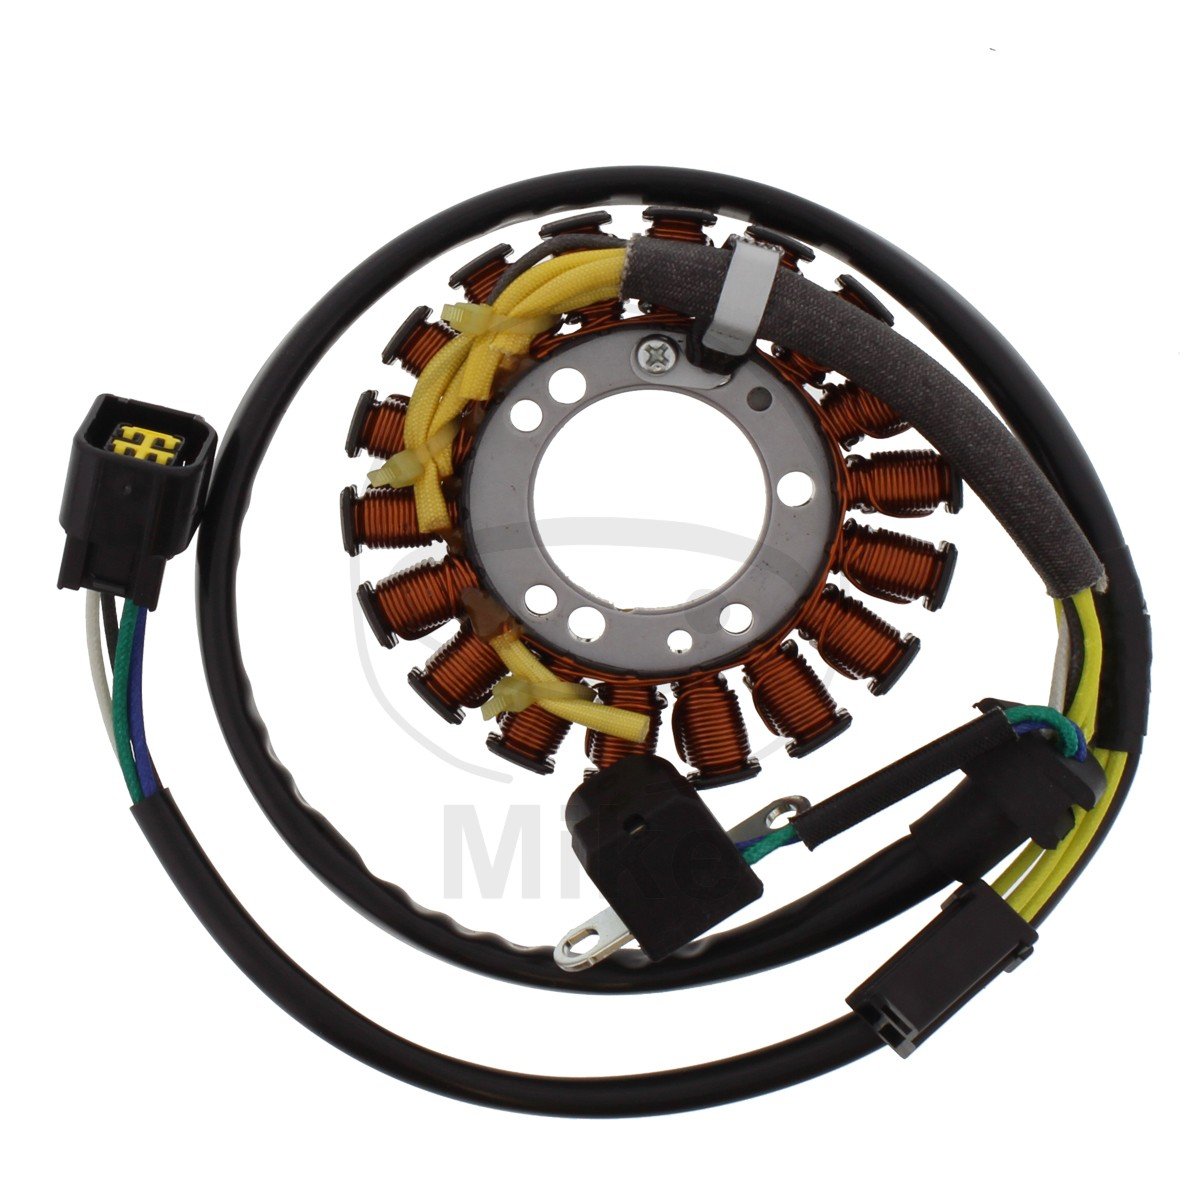 Obrázek produktu Startér motoru JMT s kabelem